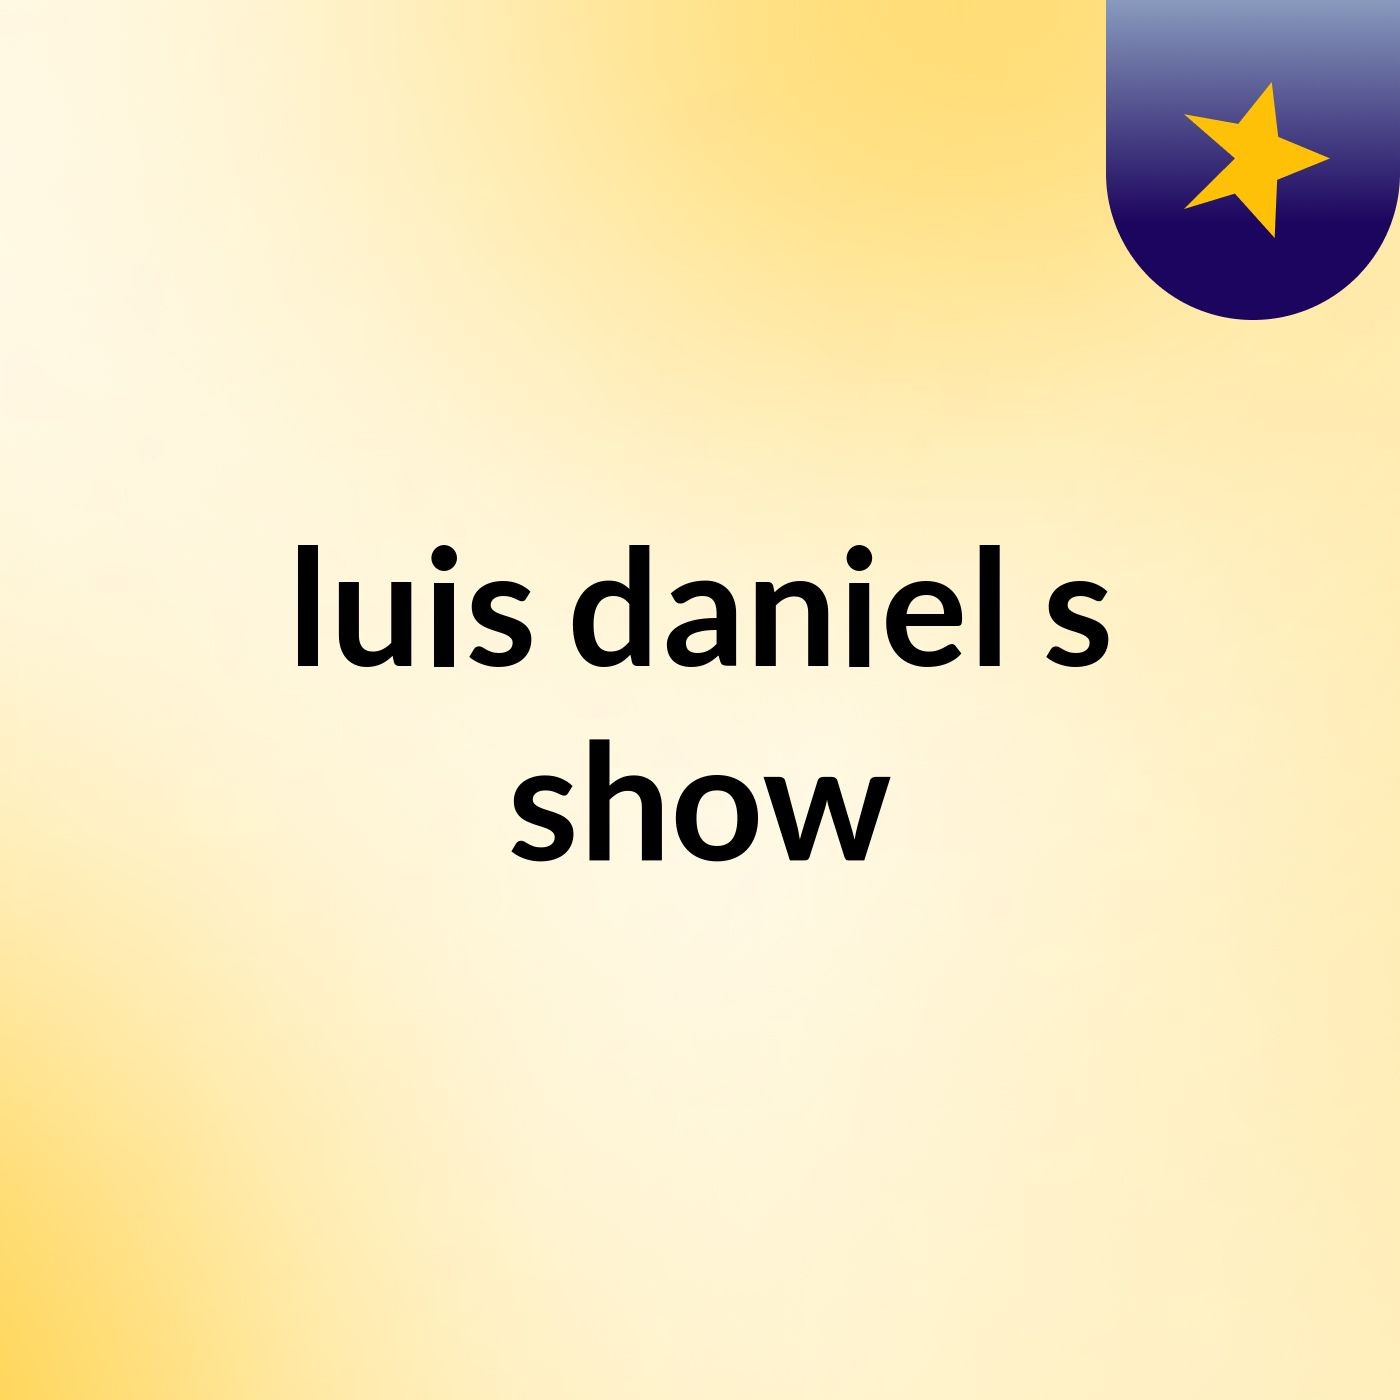 luis daniel's show